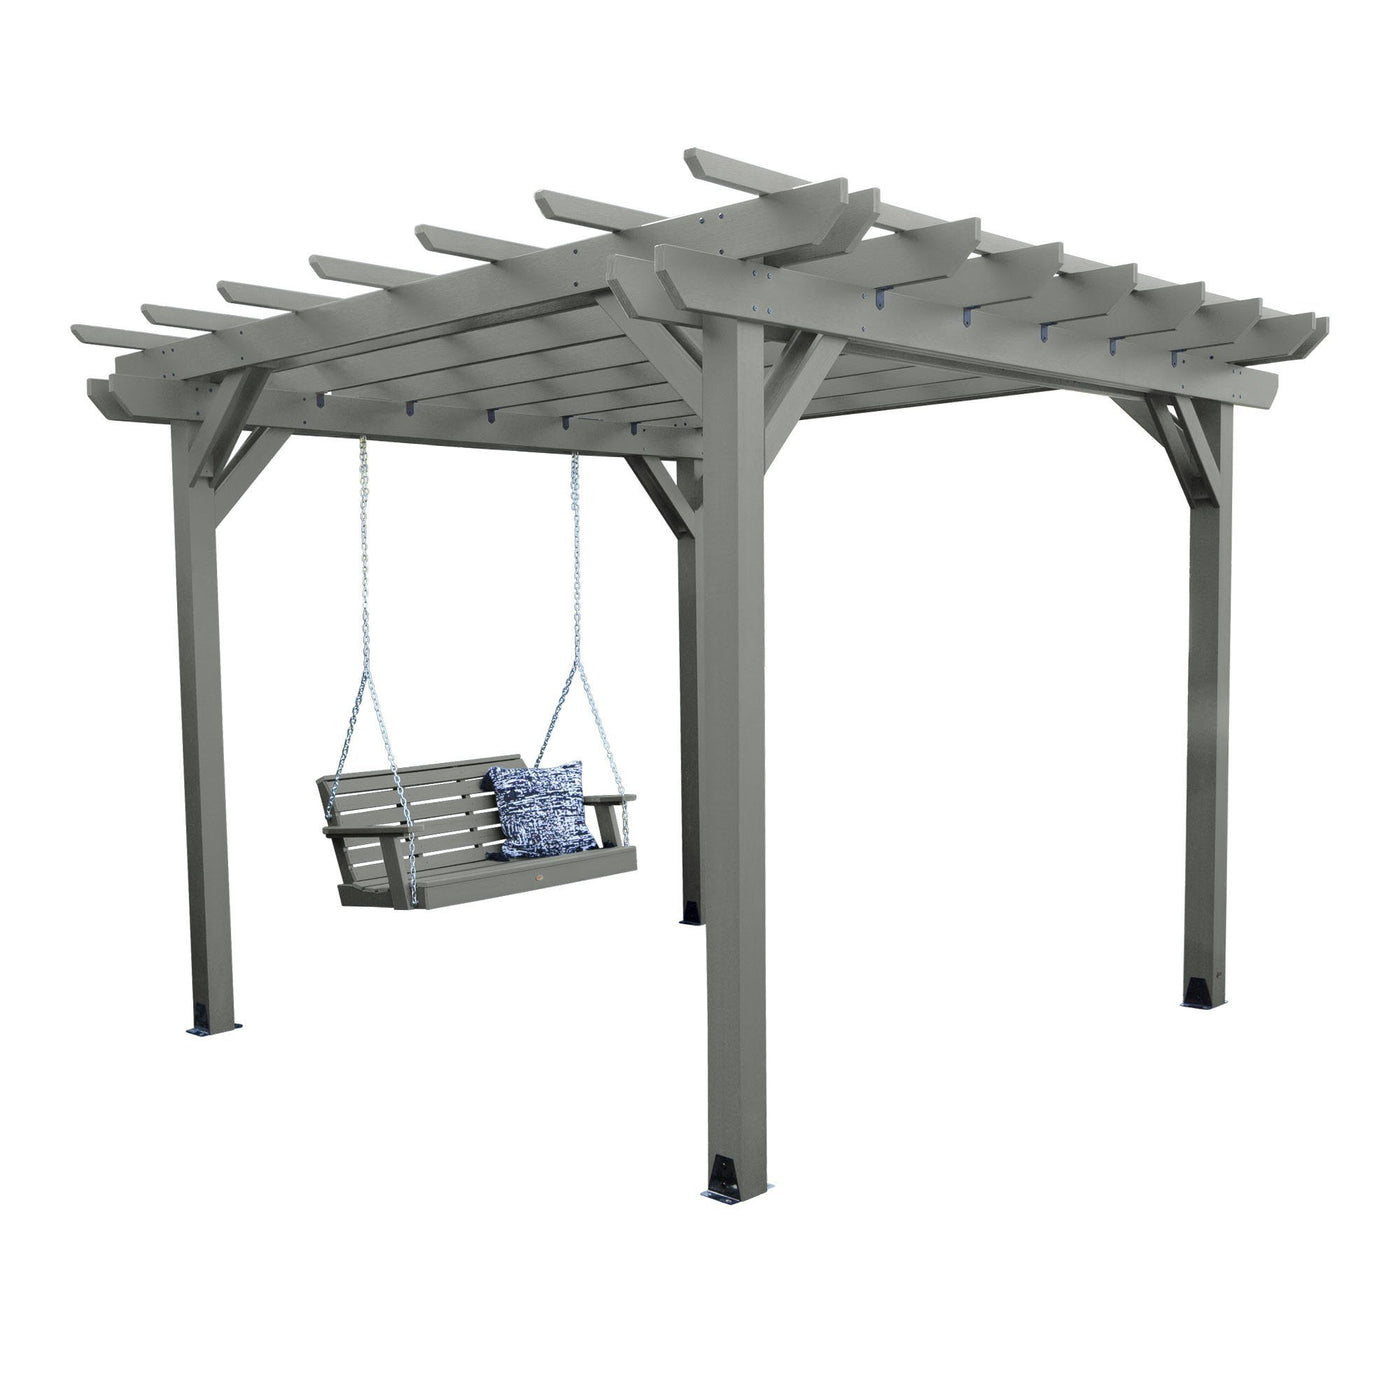 Bodhi 12’ x 12’ DIY Pergola with 4’ Weatherly Porch Swing Highwood USA Coastal Teak 